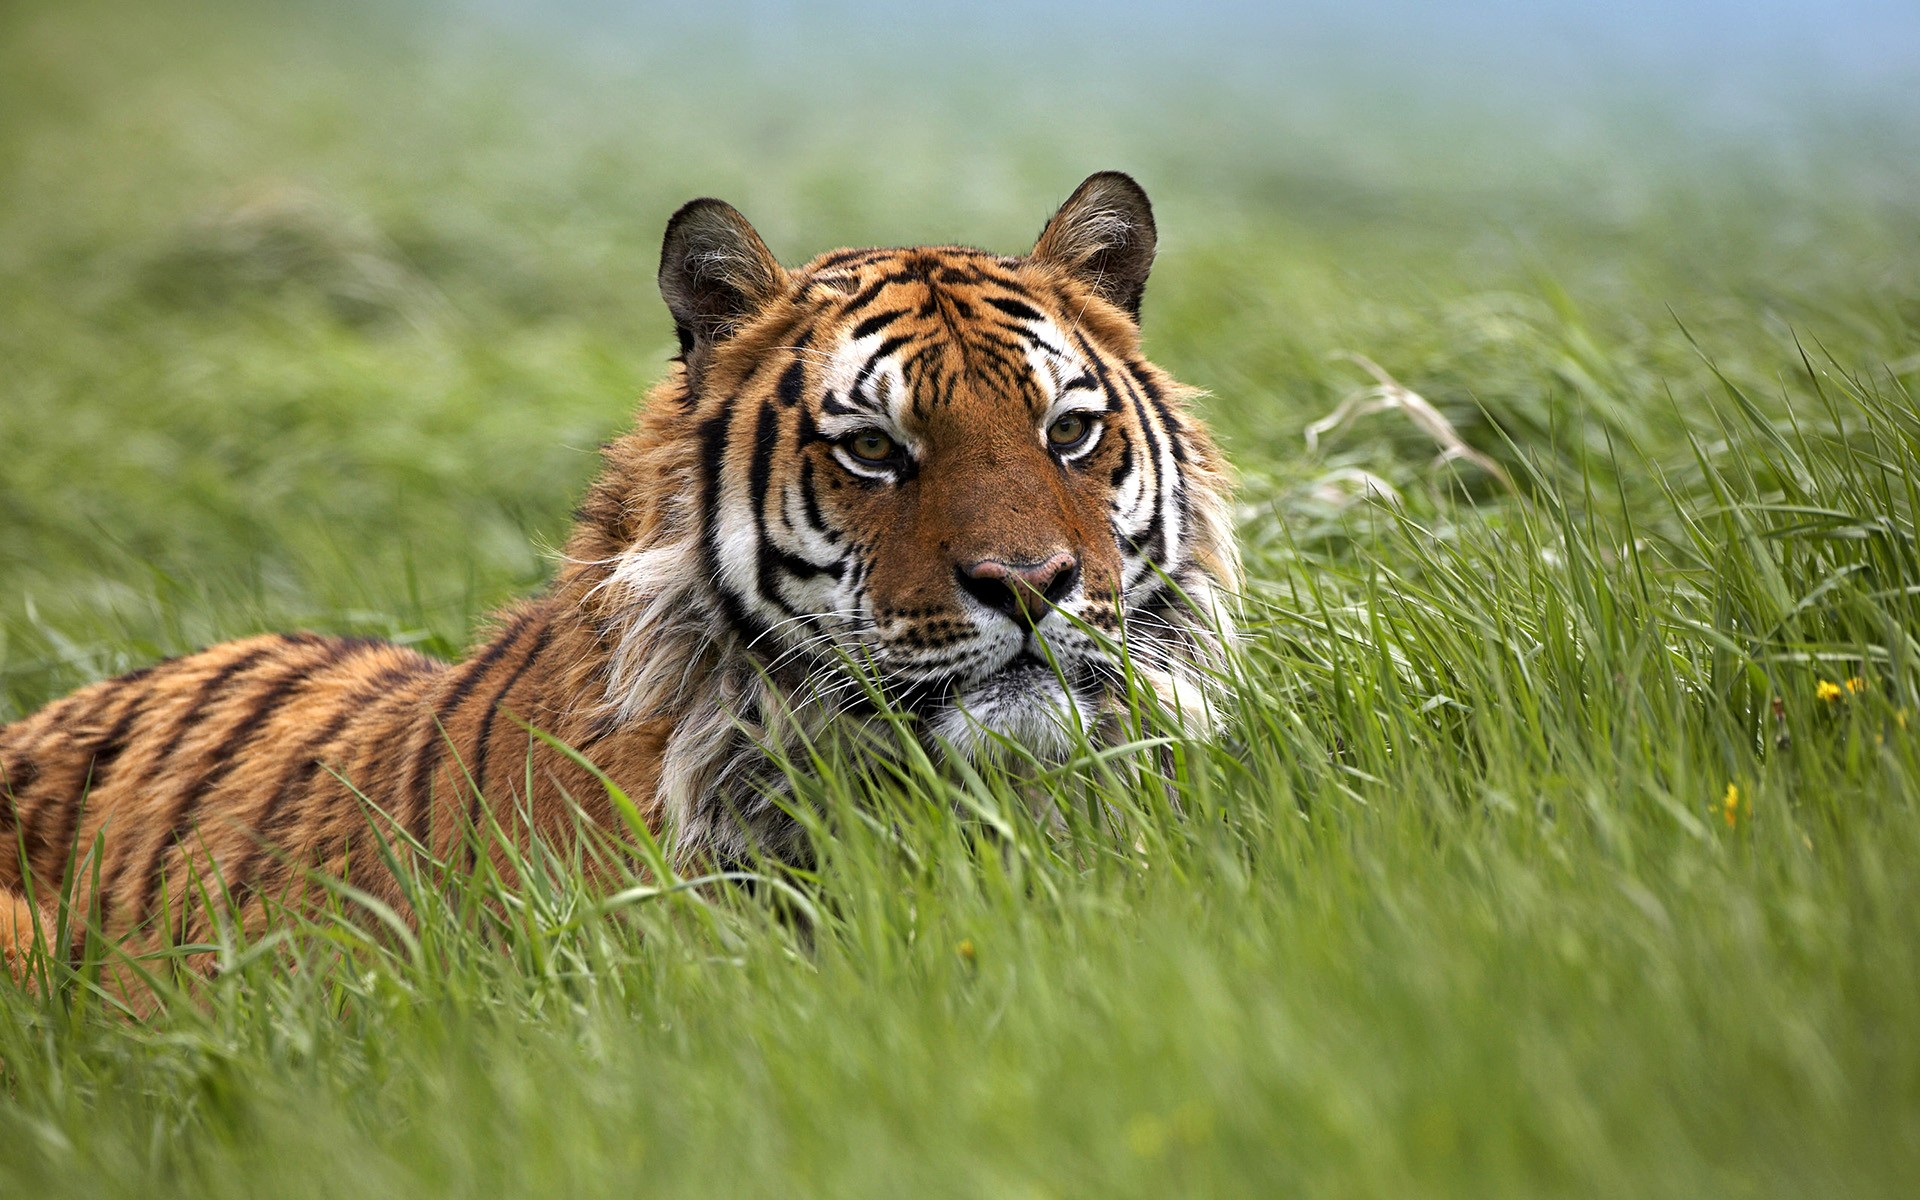 General 1920x1200 animals tiger nature big cats mammals outdoors grass closeup feline